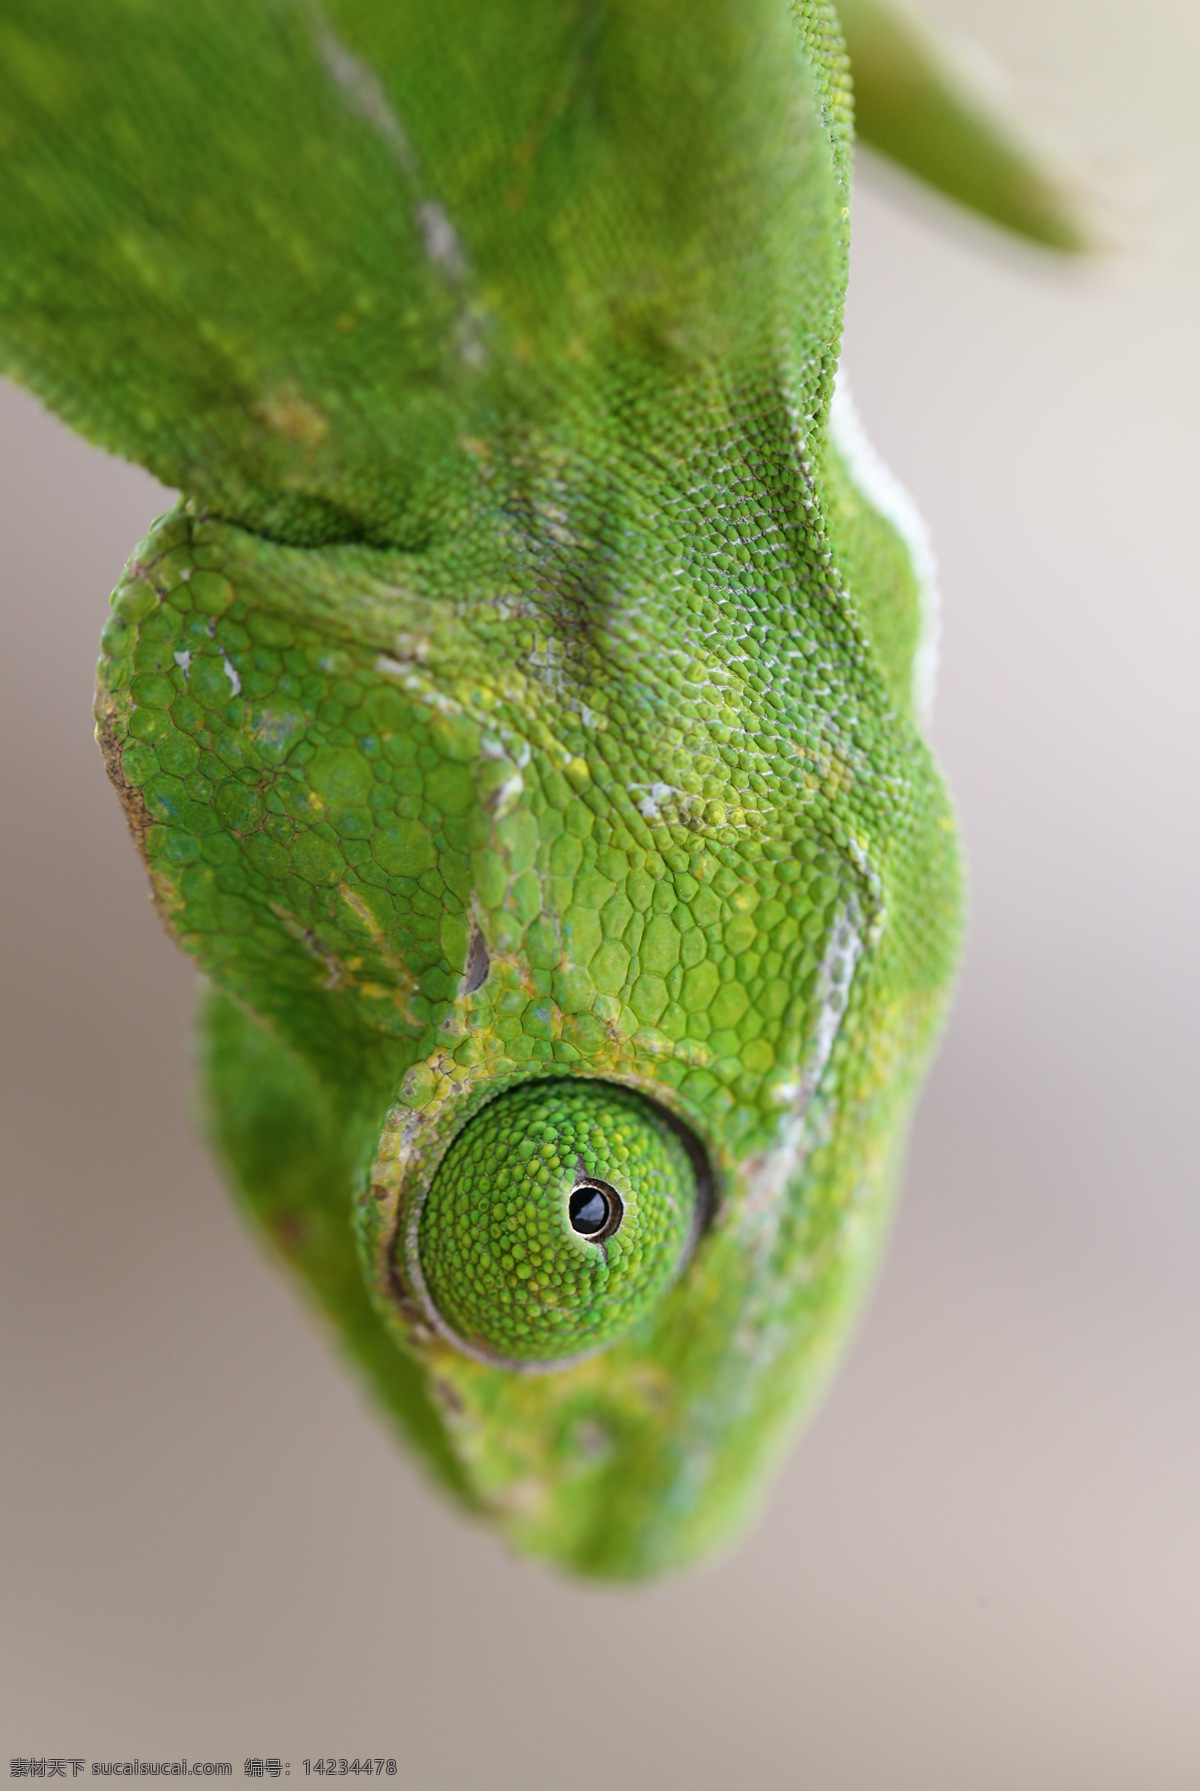 野生动物 蜥蜴 绿蛙 动物 特写 微距 生物世界